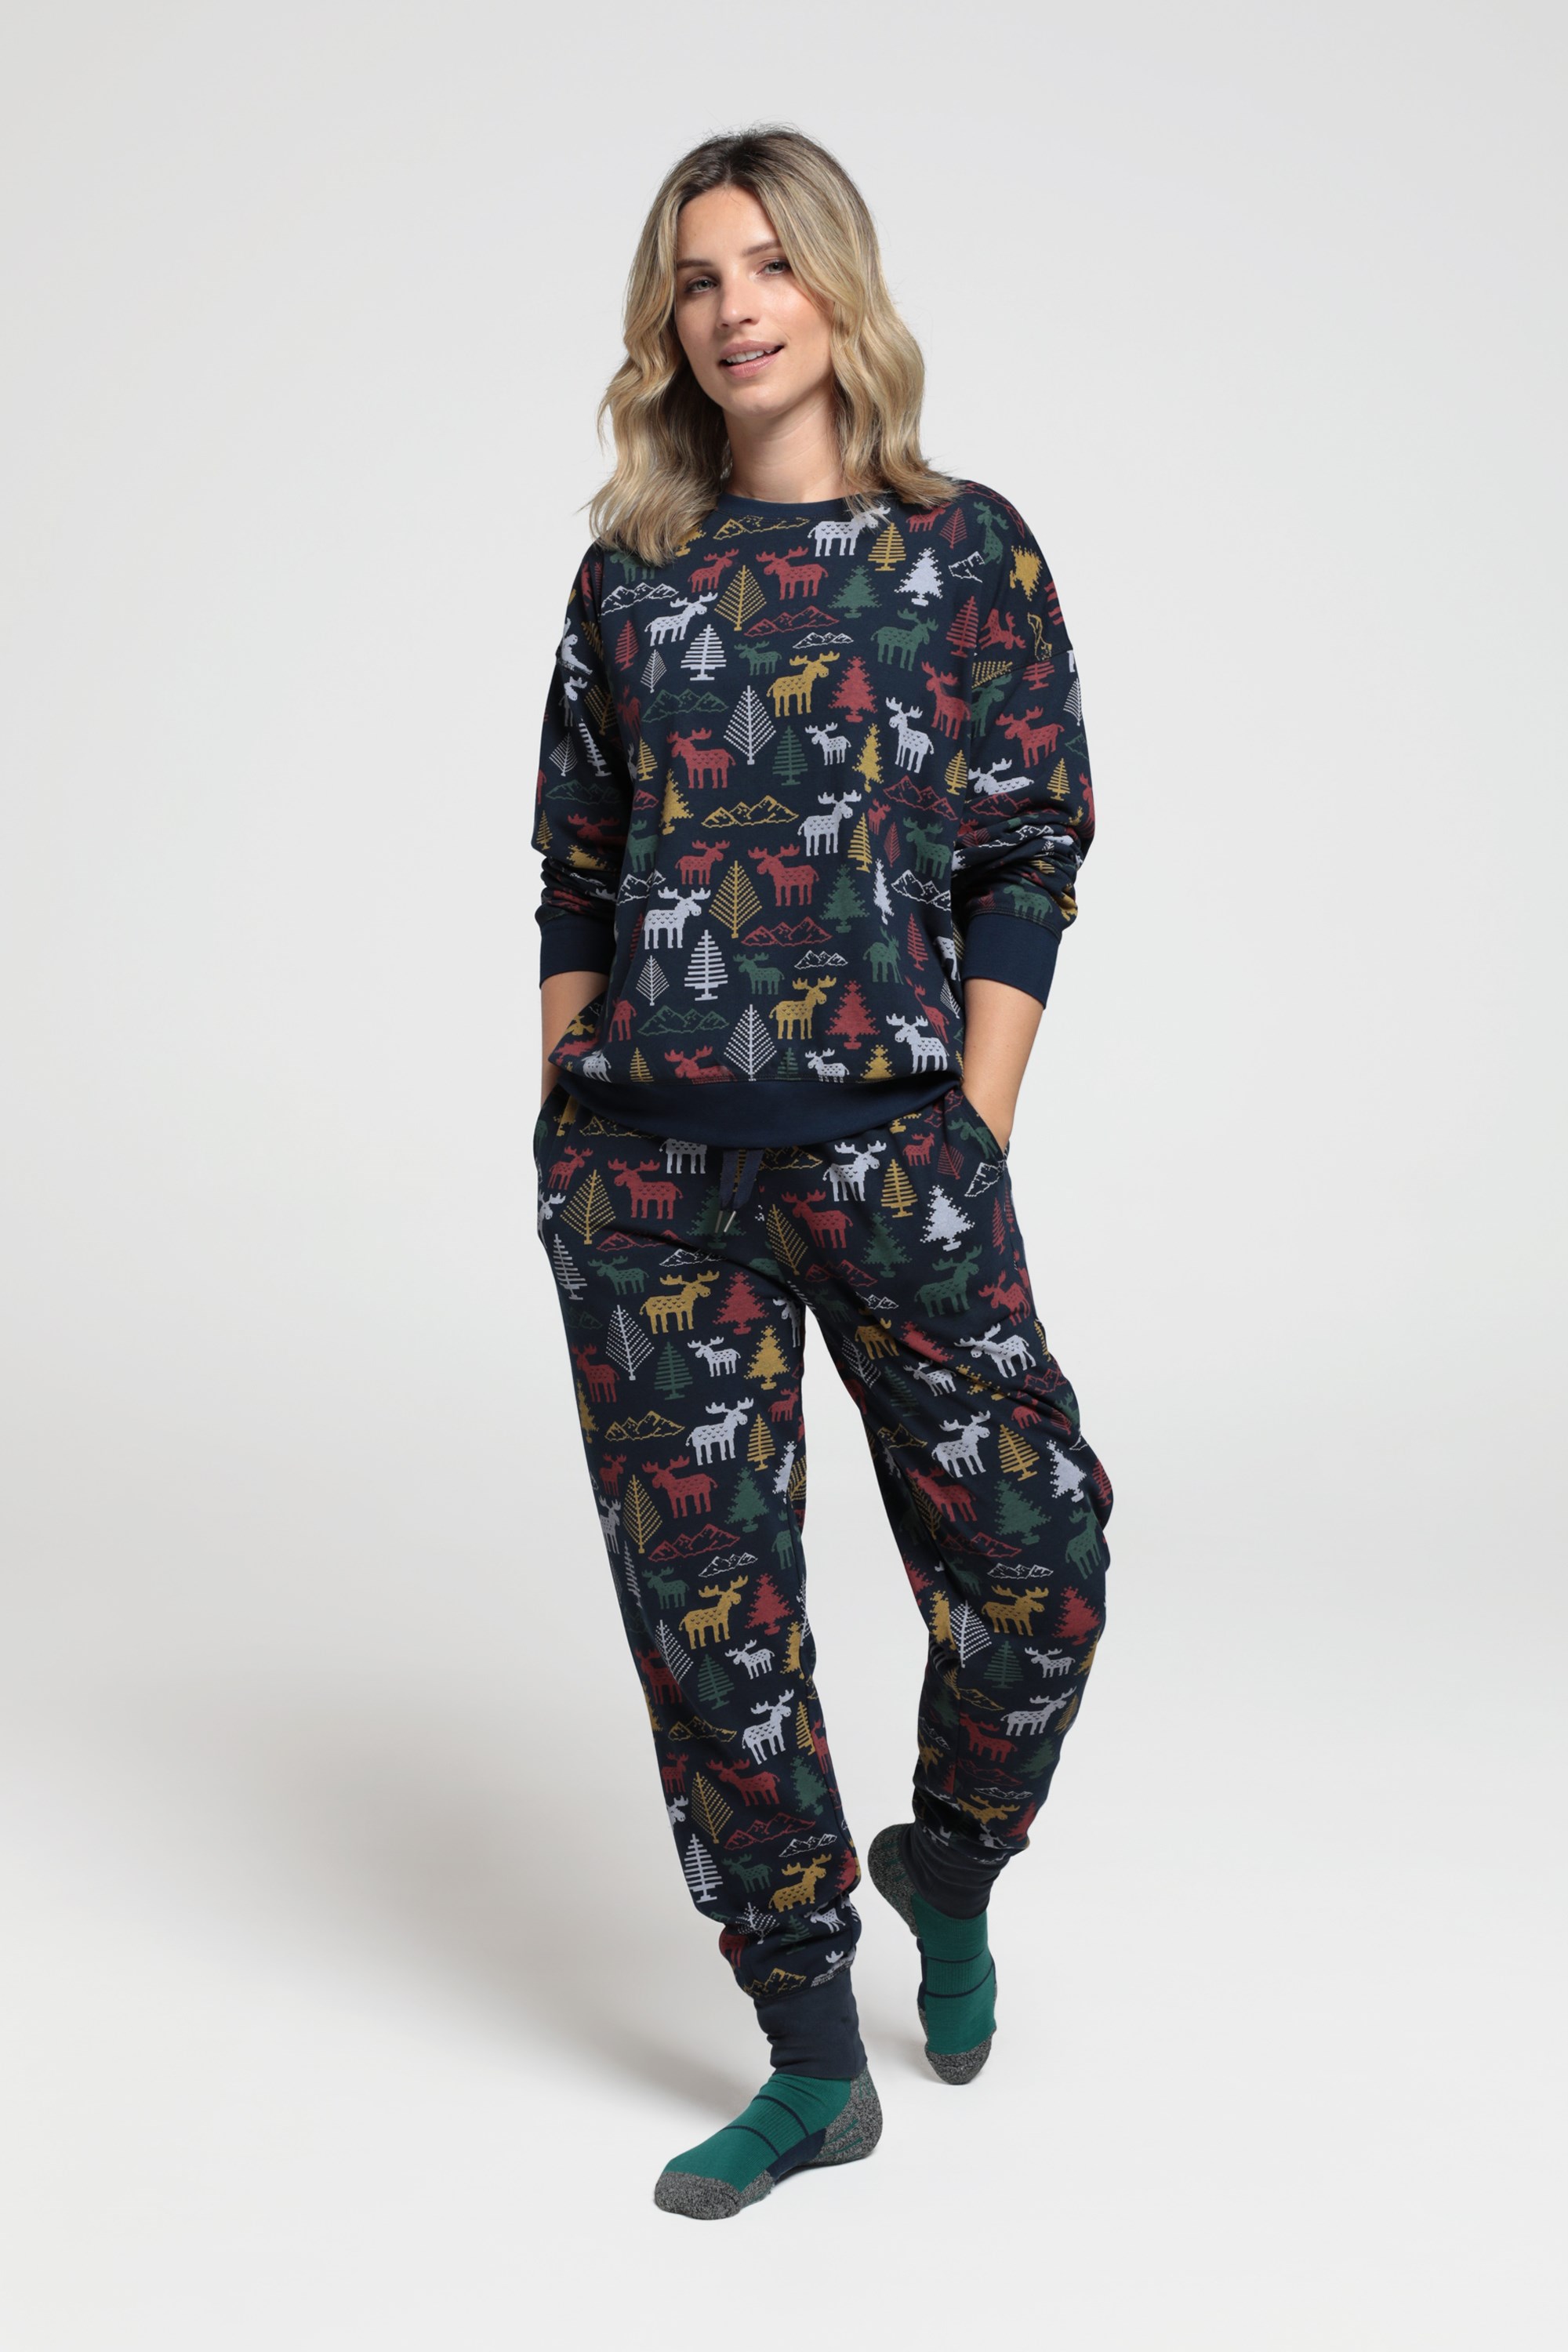 Womens Printed Pyjama Set - Navy